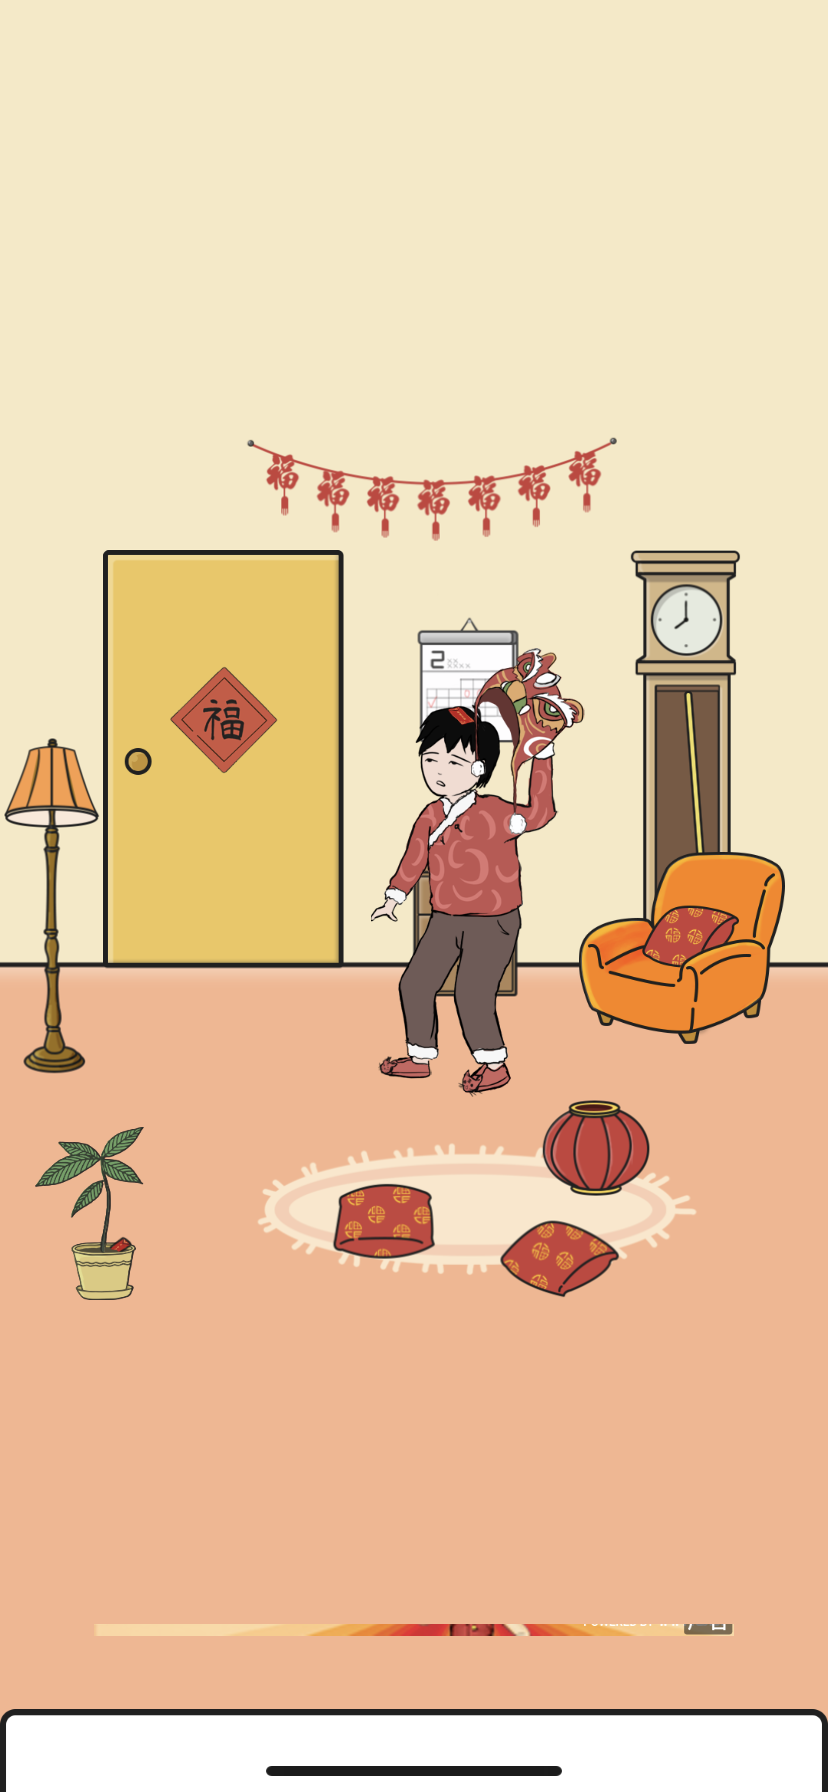 《中国式熊孩子》第7关新年红包通关攻略